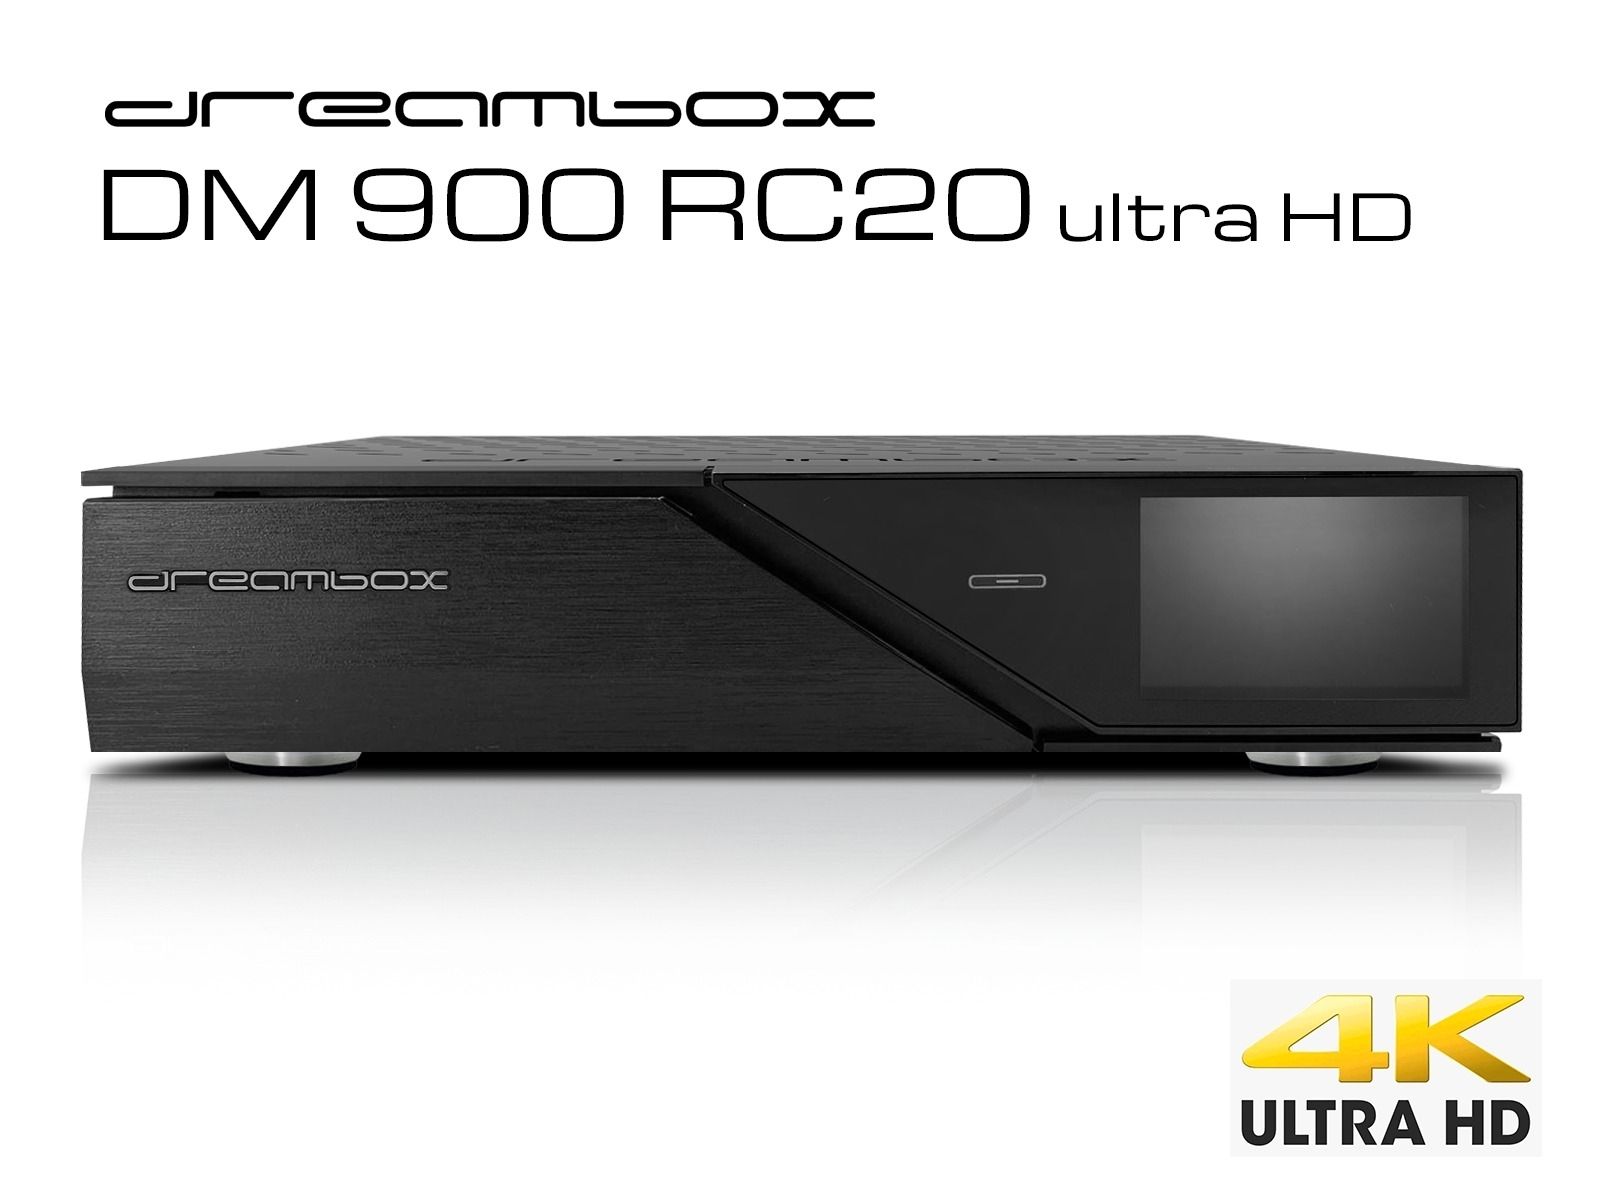 Dreambox DM900 RC20 UHD 4K  1x Dual DVB-S2X MS Tuner E2 Linux PVR ready Receiver von Dreambox